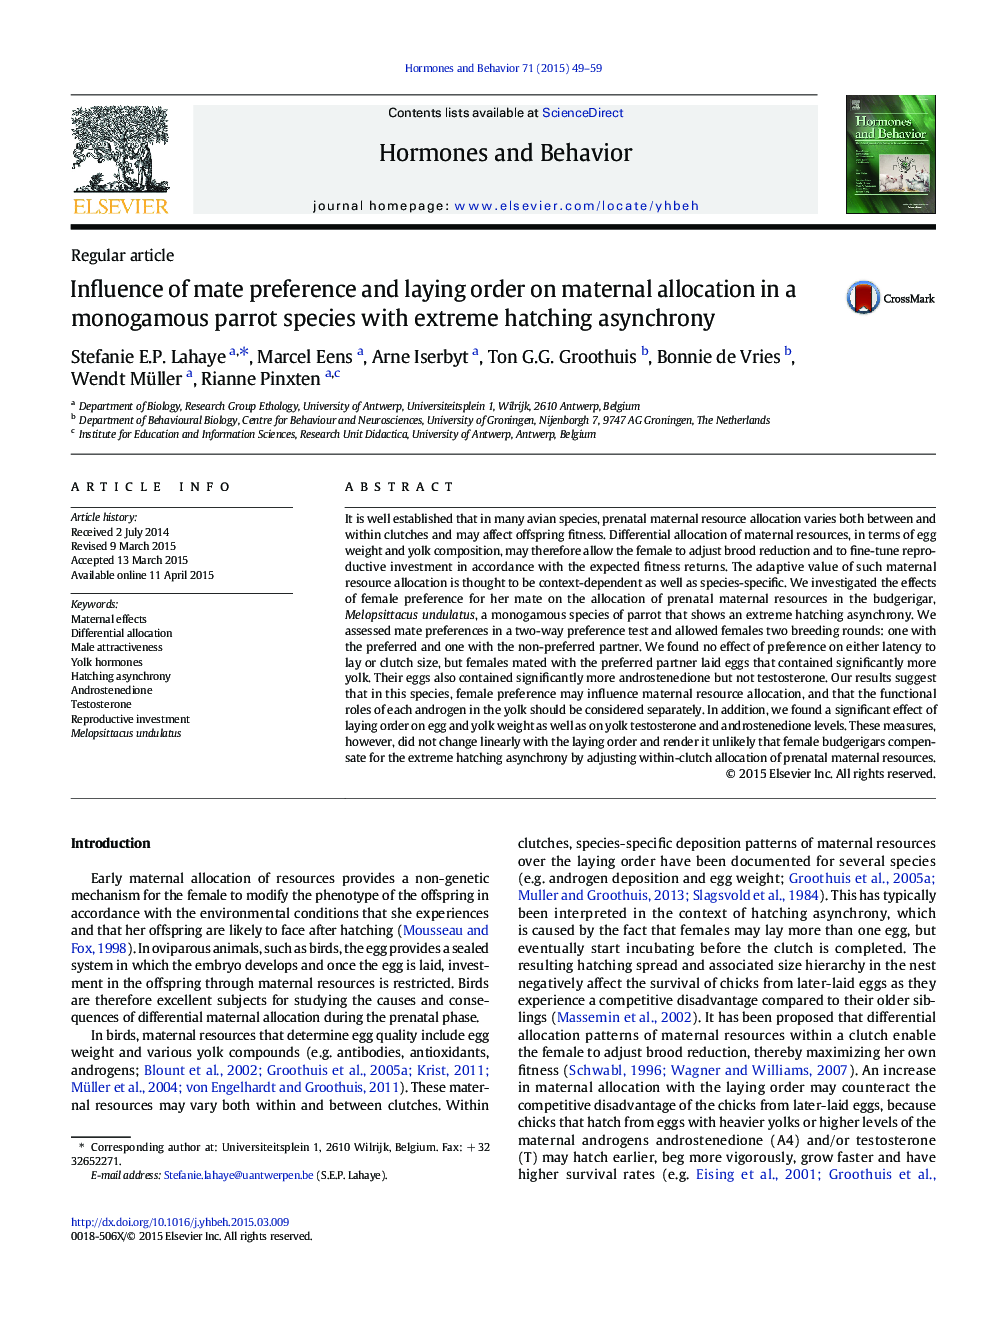 تأثیر ترجیح مات و ترتیب تخمین بر تخصیص مادران در گونه های طوطی مونوگامی با ناهنجاری های شدید شلاق 